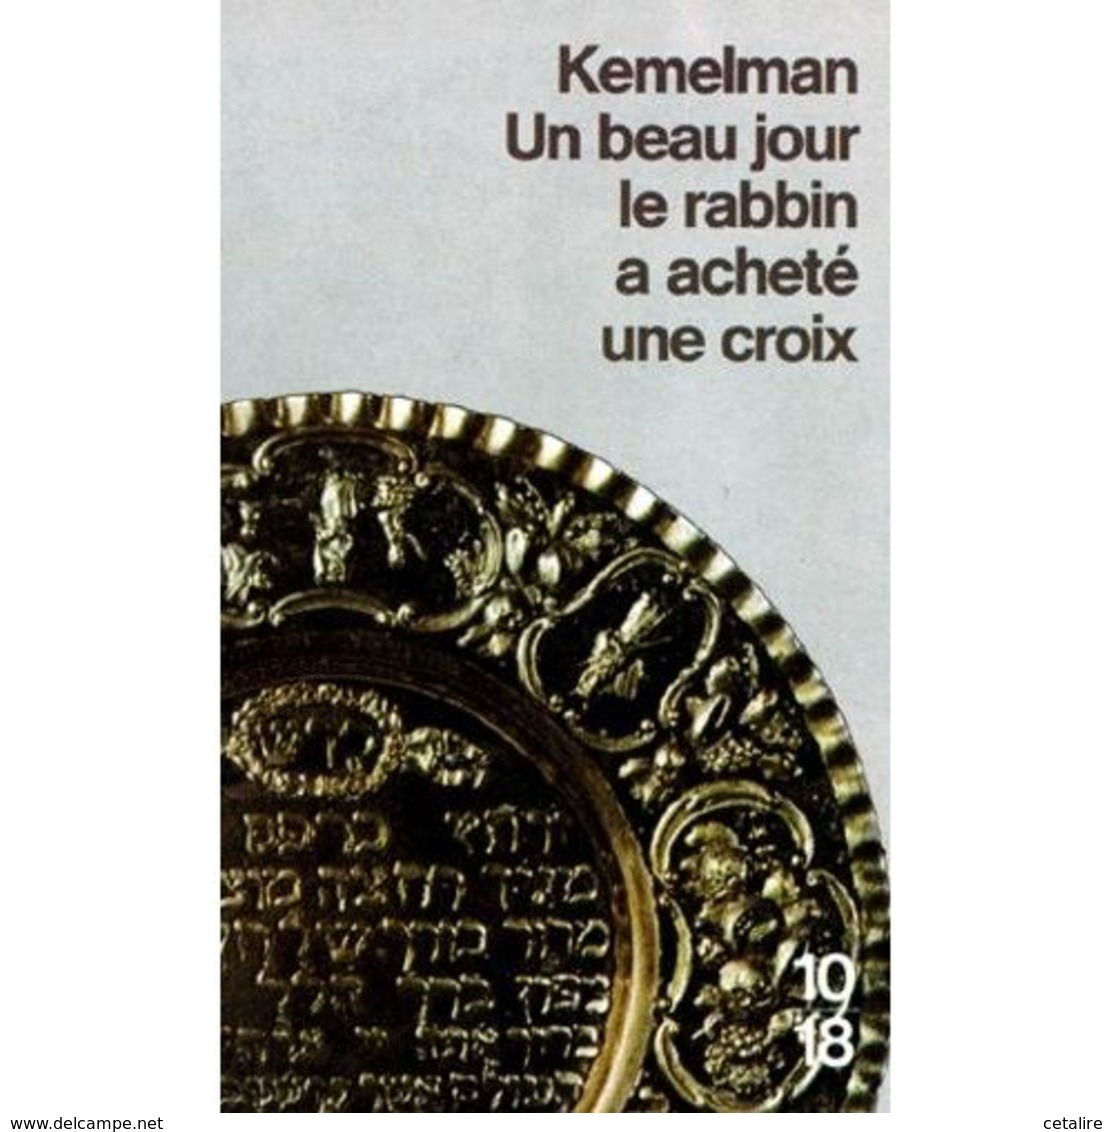 Le Rabbin A Acheté Une Croix Kemelman +++TBE+++ PORT OFFERT - 10/18 - Grands Détectives